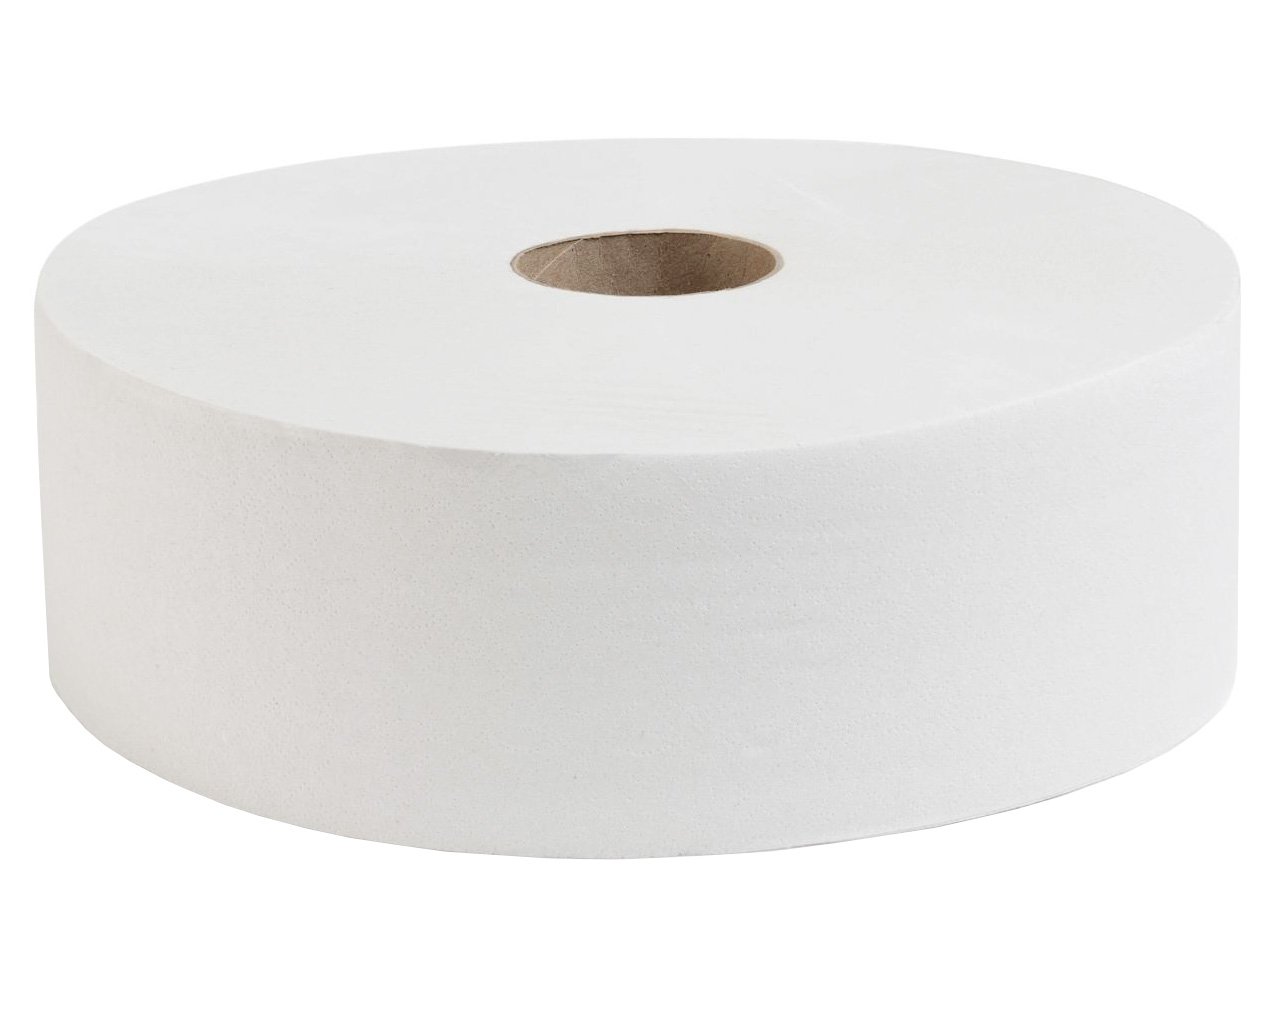 Туалетная бумага PROtissue изготовлена из целлюлозы. Однослойная, белого цвета, плотно намотана. Диаметр рулона 240 мм. Предназначена для применения в местах в высокой проходимостью. Увеличенная длина намотки 525 метров позволяет сократить частую смену рулонов. В упаковке 6 рулонов.